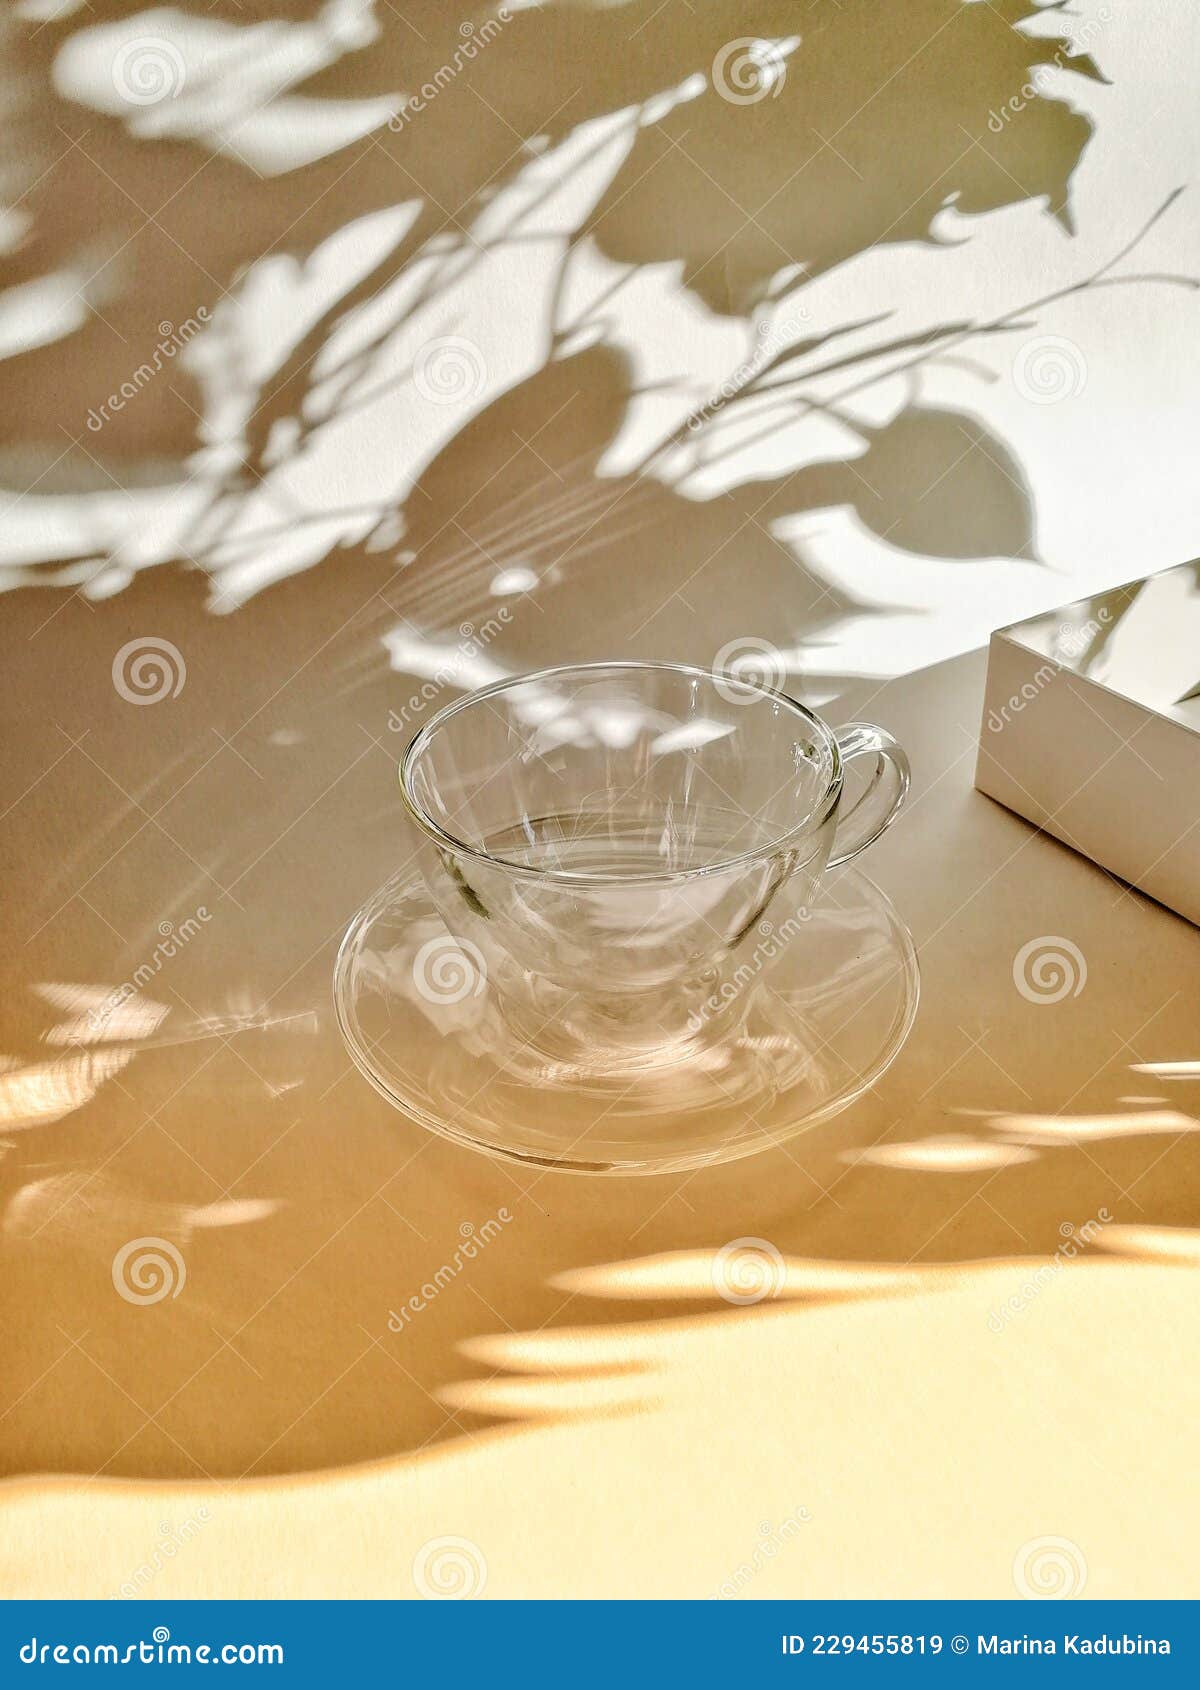 一个透明的红酒杯放在褐色的地面上阳光照射下来形成一个影子食物饮品素材设计